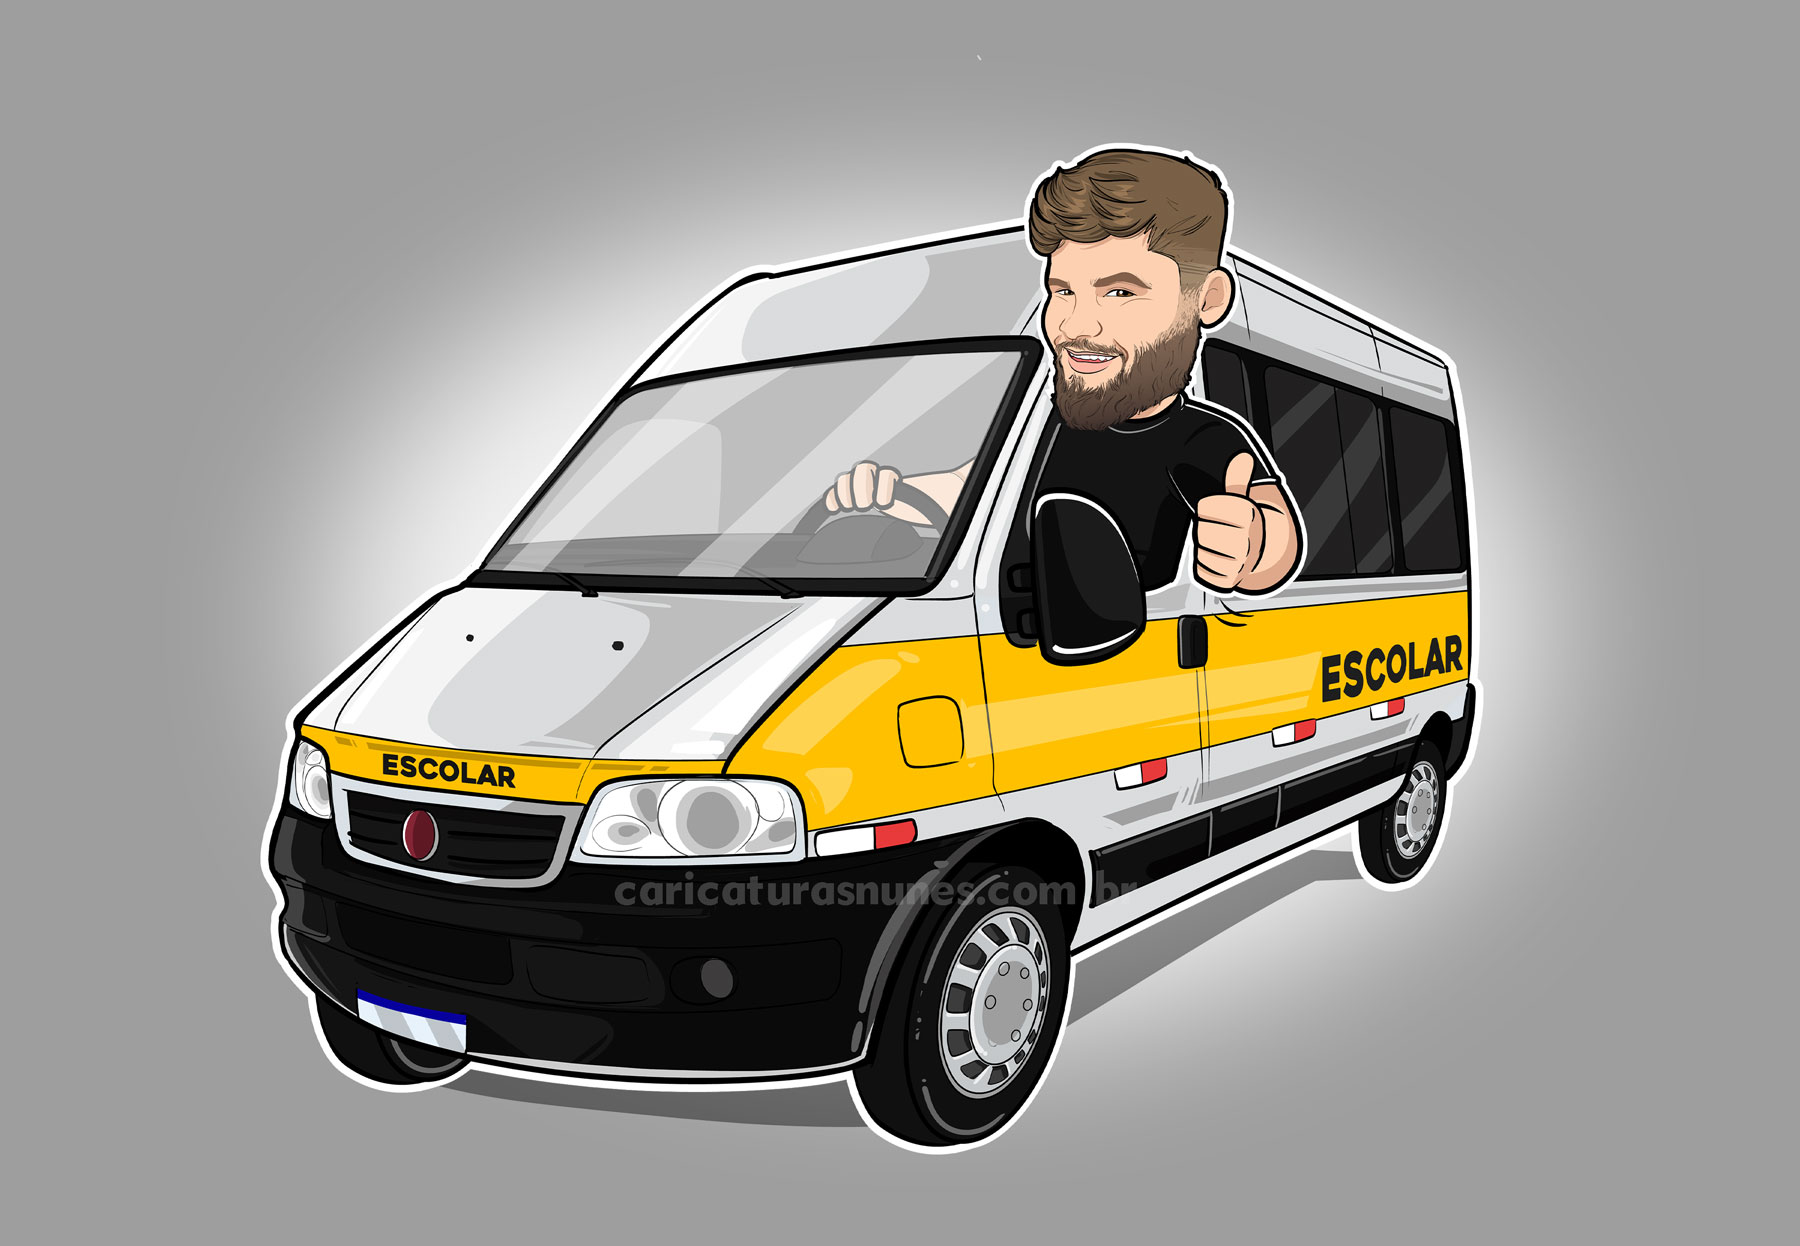 Caricatura para transporte escolar - Caricatura digital de um homem dentro de uma van escolar